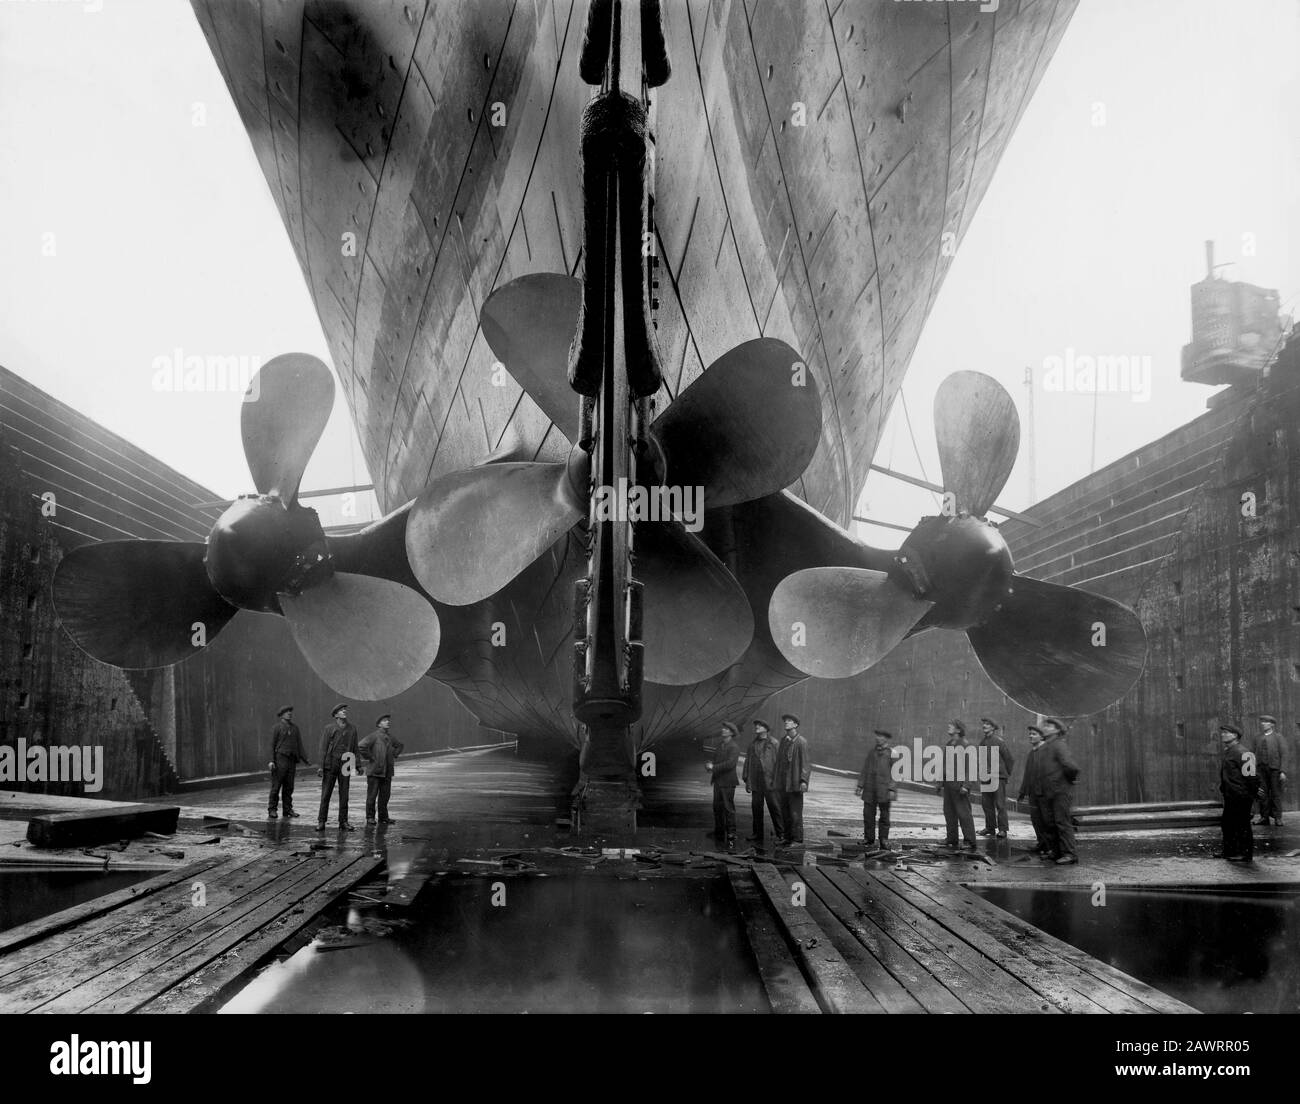 1911, Belfast, IRLAND: Die propeller der britischen Ocean Liner RMS TITANIC vor dem Start, Harland und Wolff-Werften, Belfast - VARO - FOTO STORICH Stockfoto